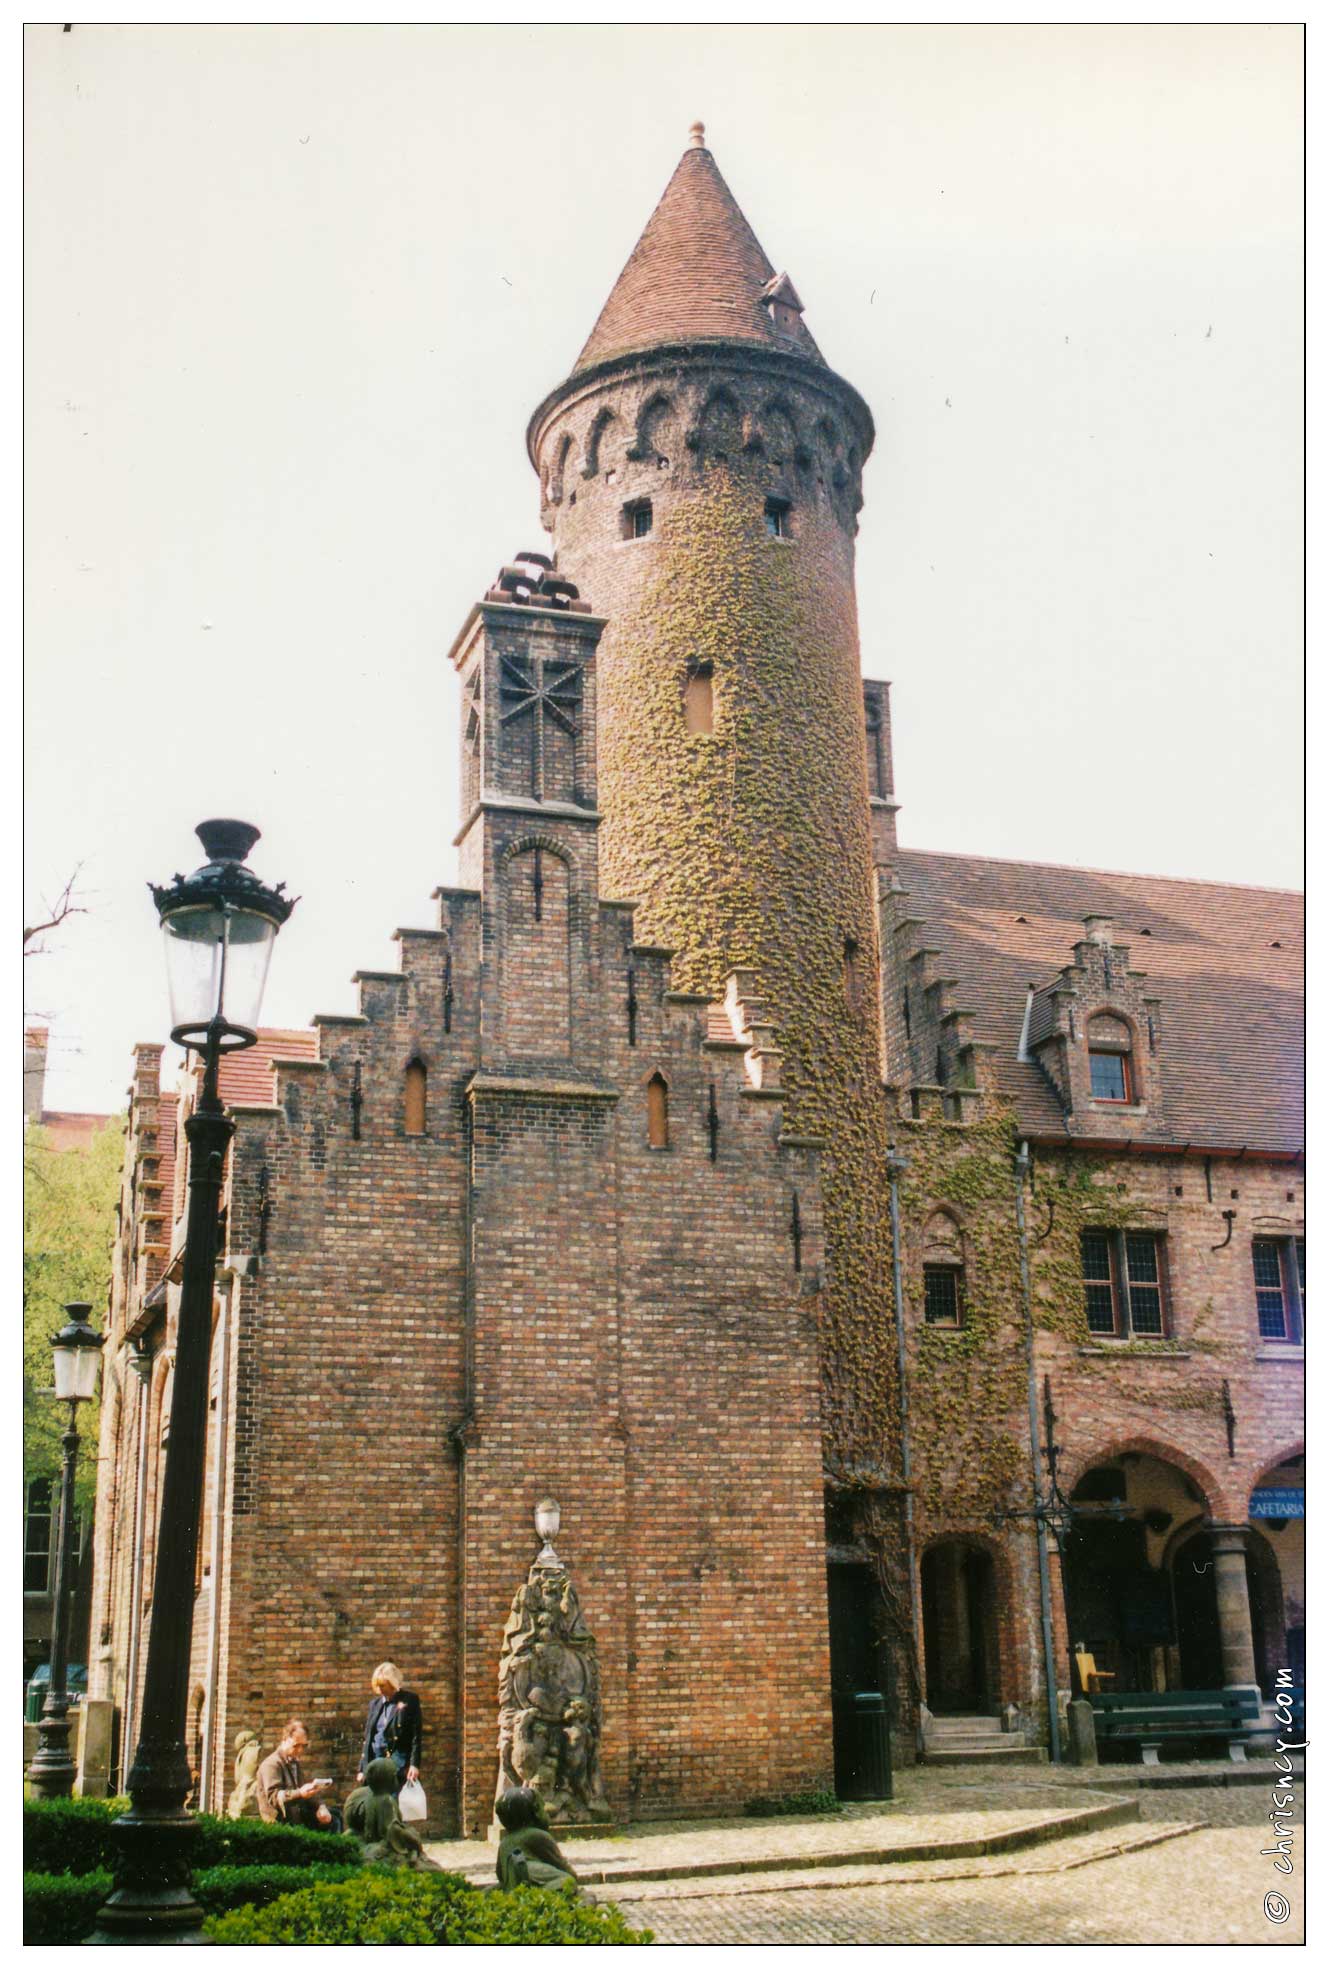 19990400-0030-Brugge.jpg